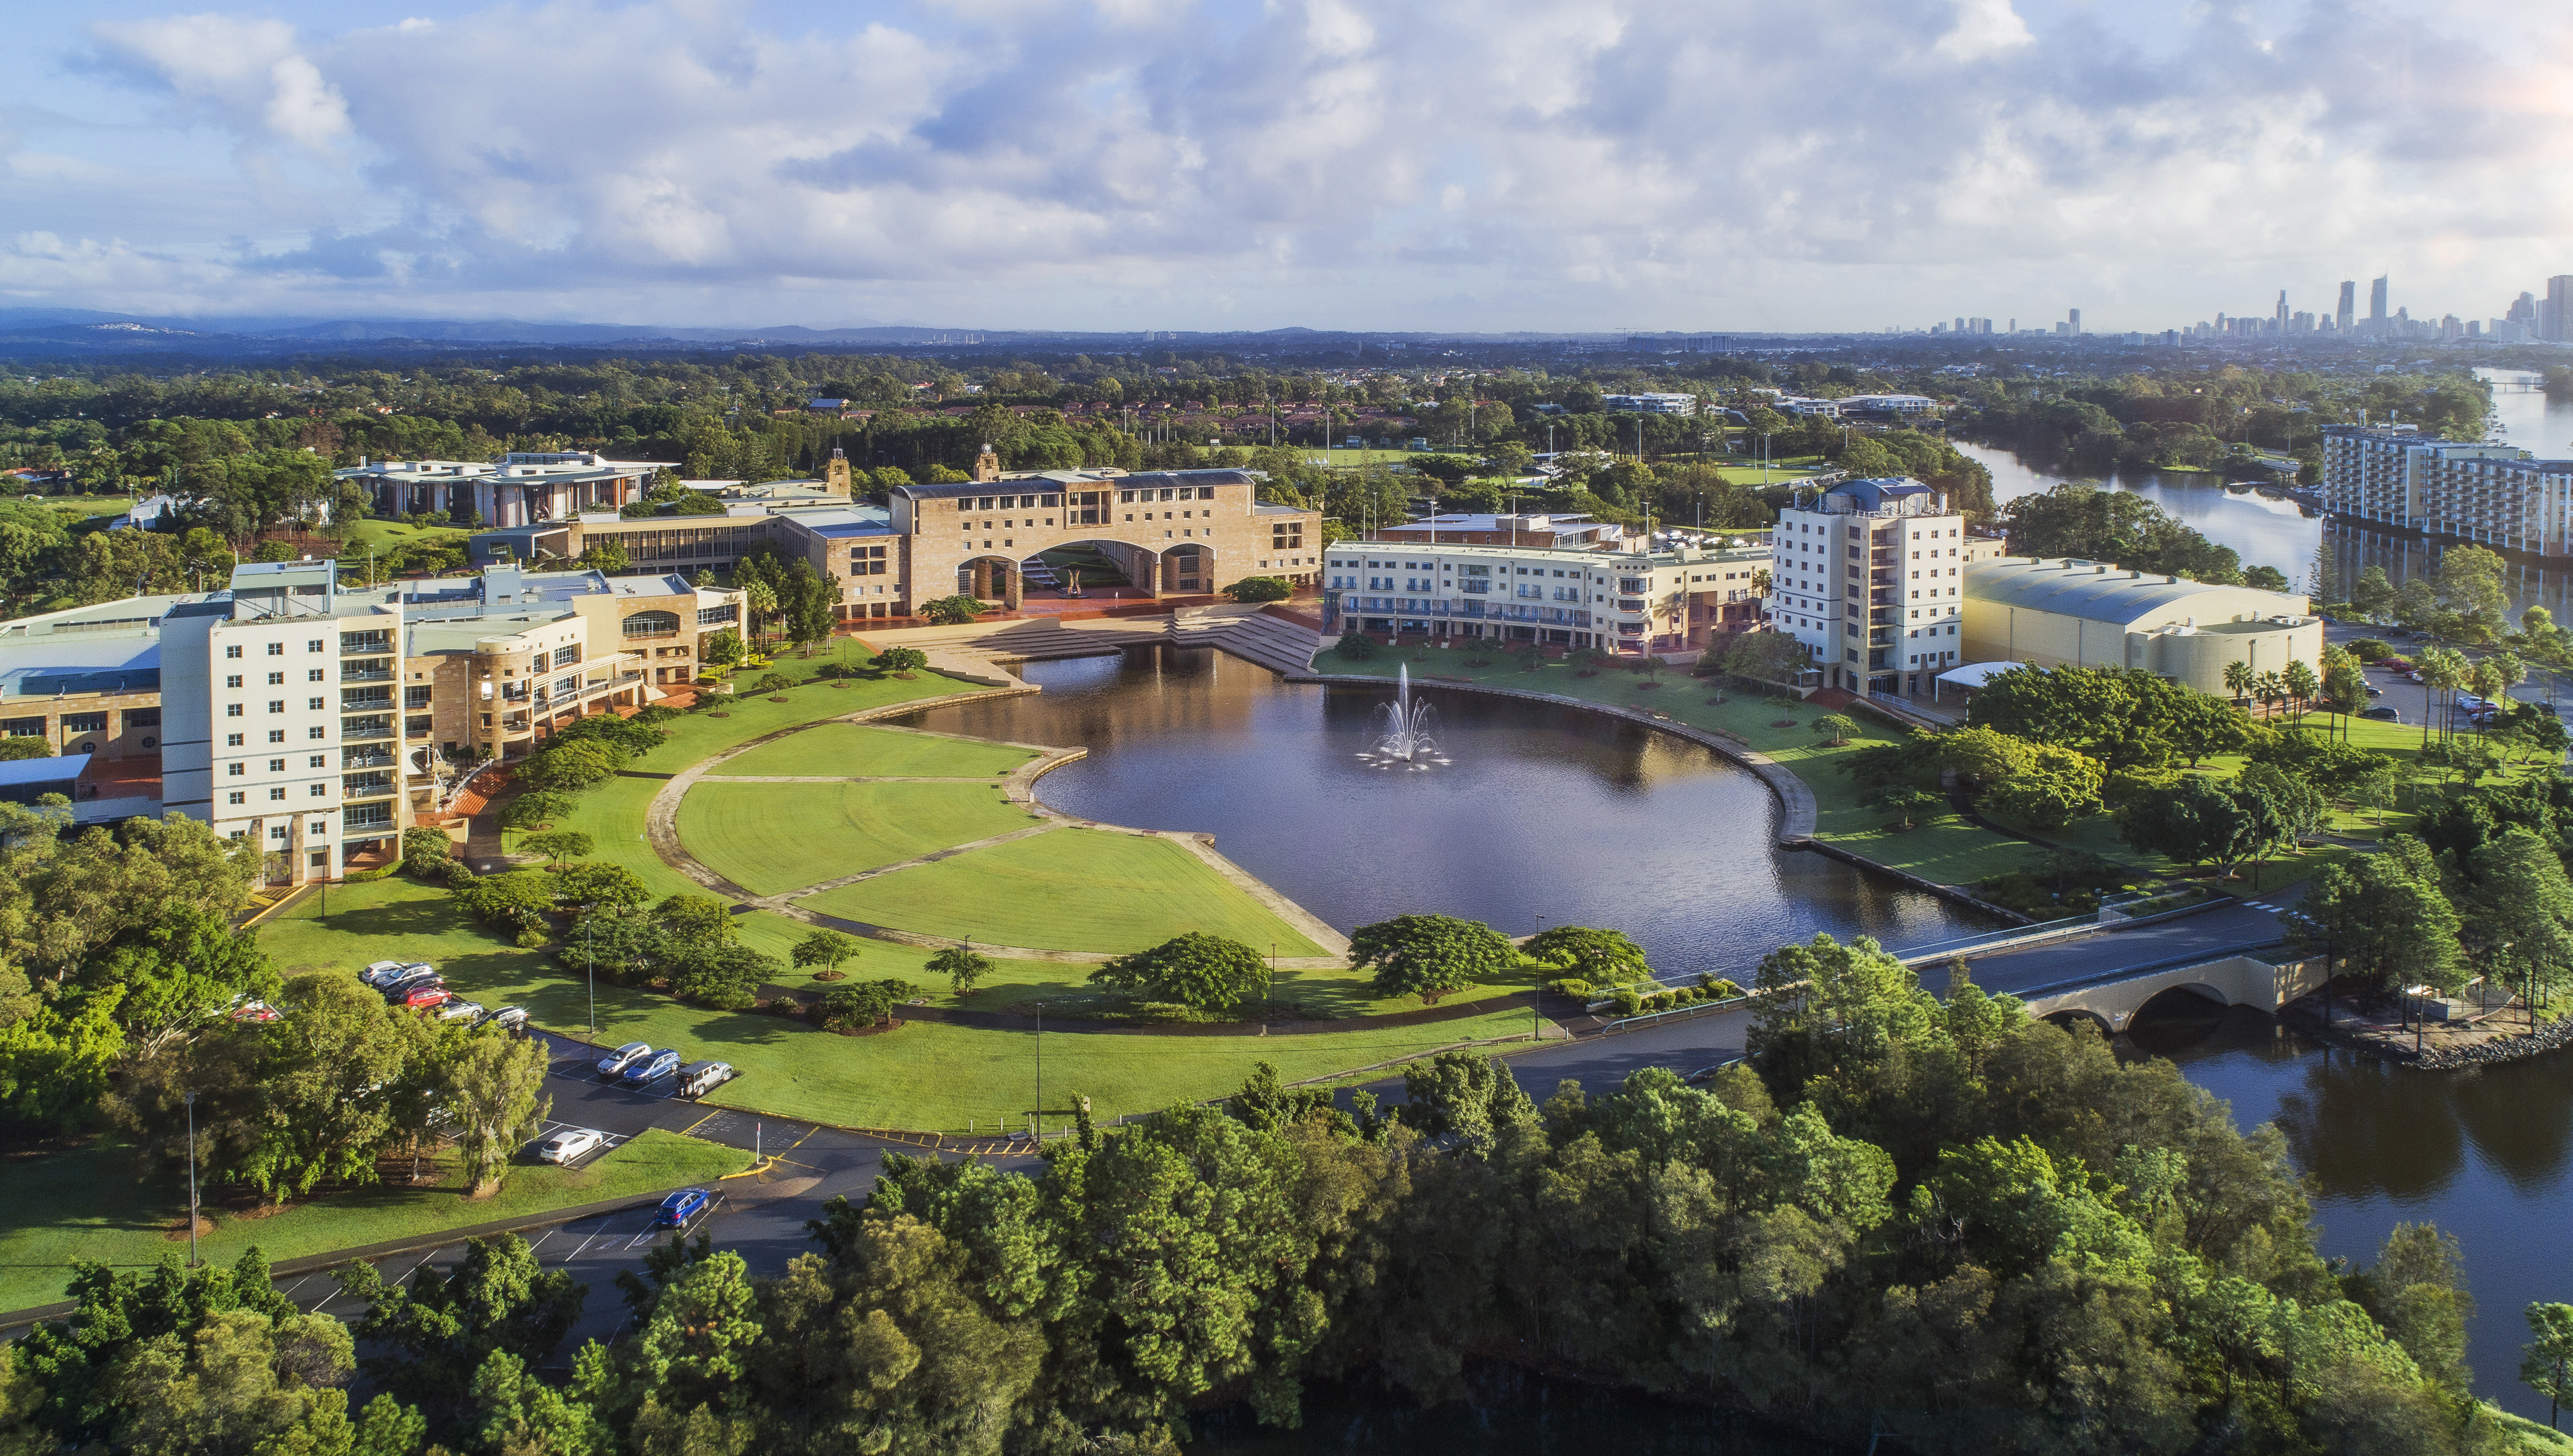 The campus Bond University | Queensland, Australia